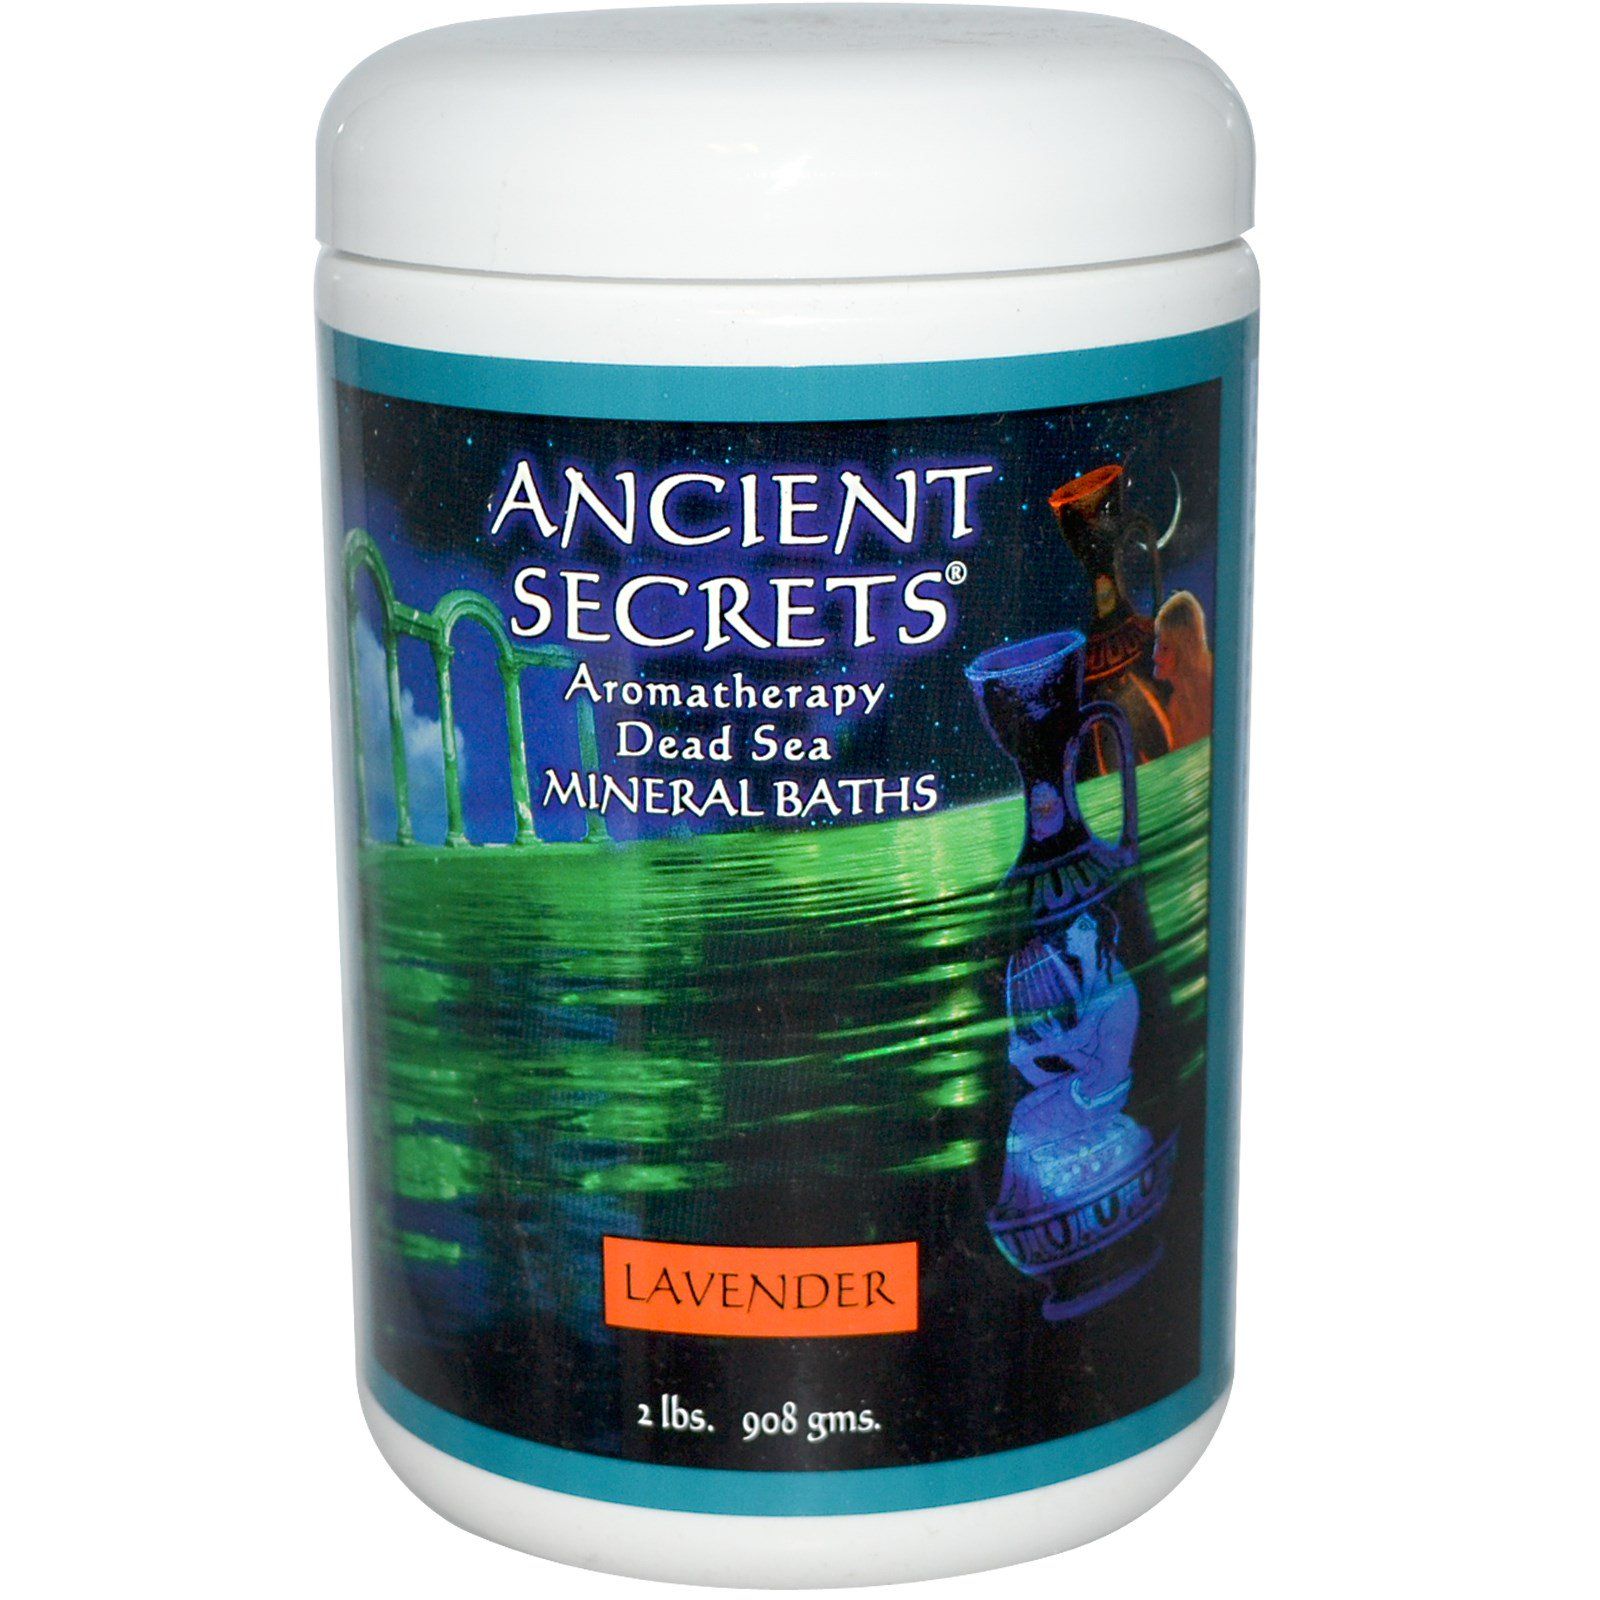 Ancient Secrets Lotus Brand Inc. Ароматерапия средство для ванны с минералами мертвого моря лаванда 2 фунта (908 г)